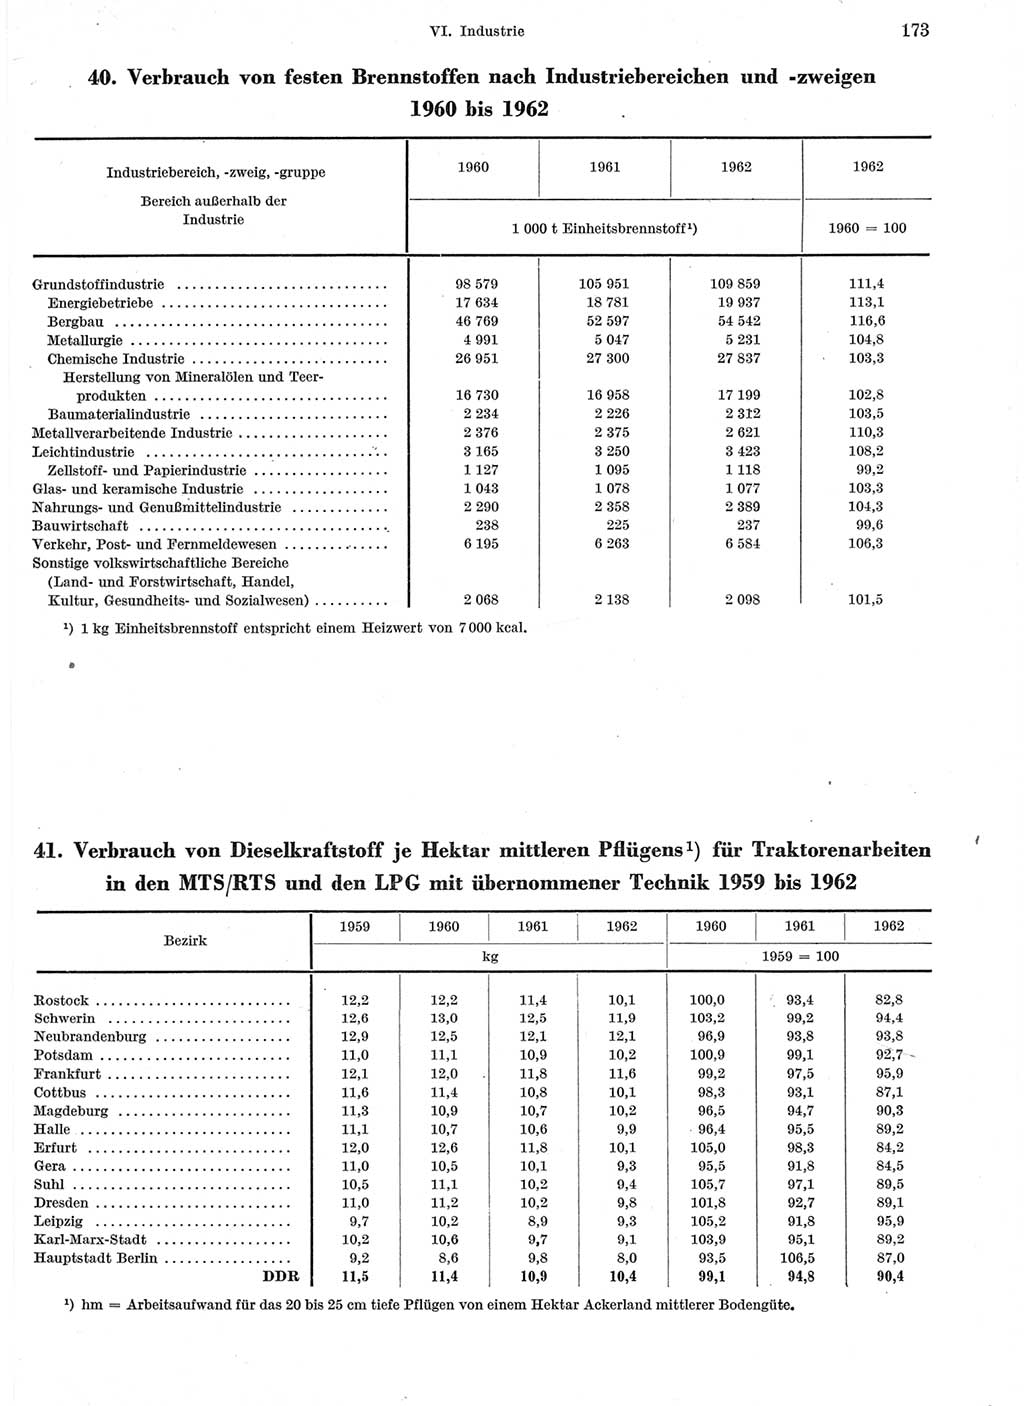 Statistisches Jahrbuch der Deutschen Demokratischen Republik (DDR) 1963, Seite 173 (Stat. Jb. DDR 1963, S. 173)